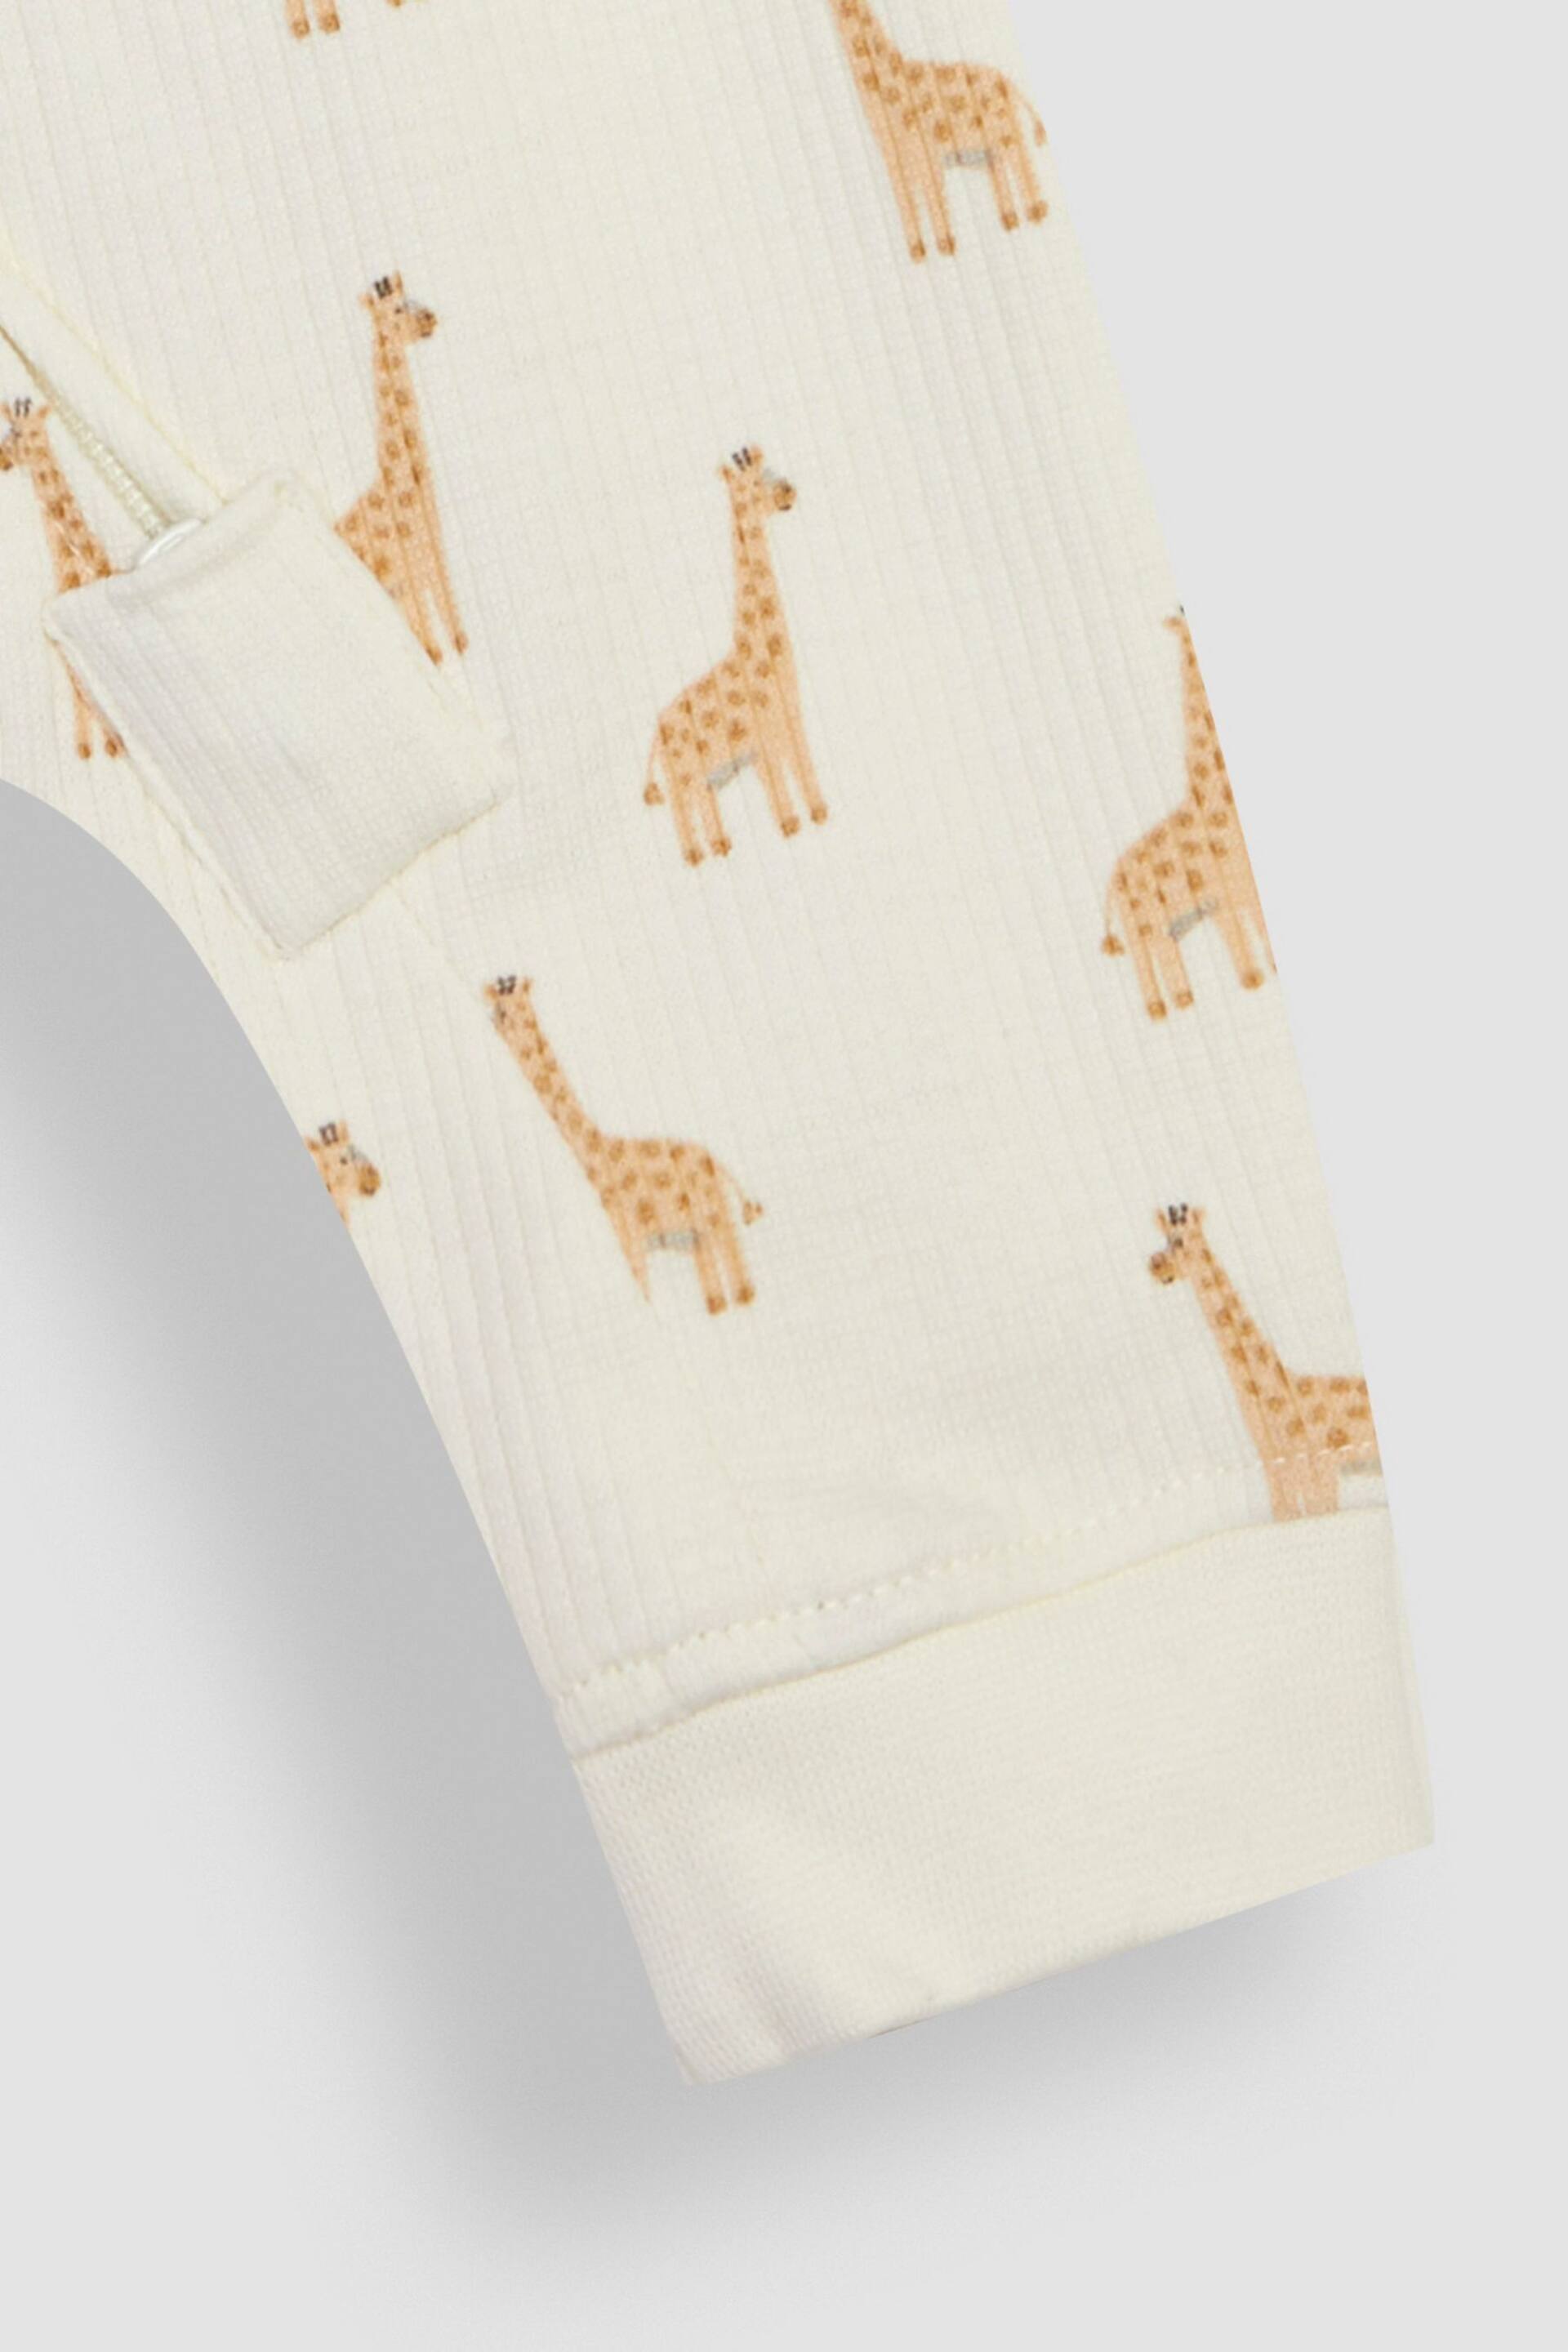 JoJo Maman Bébé Cream Giraffe Printed Rib Footless Sleepsuit - Image 4 of 4